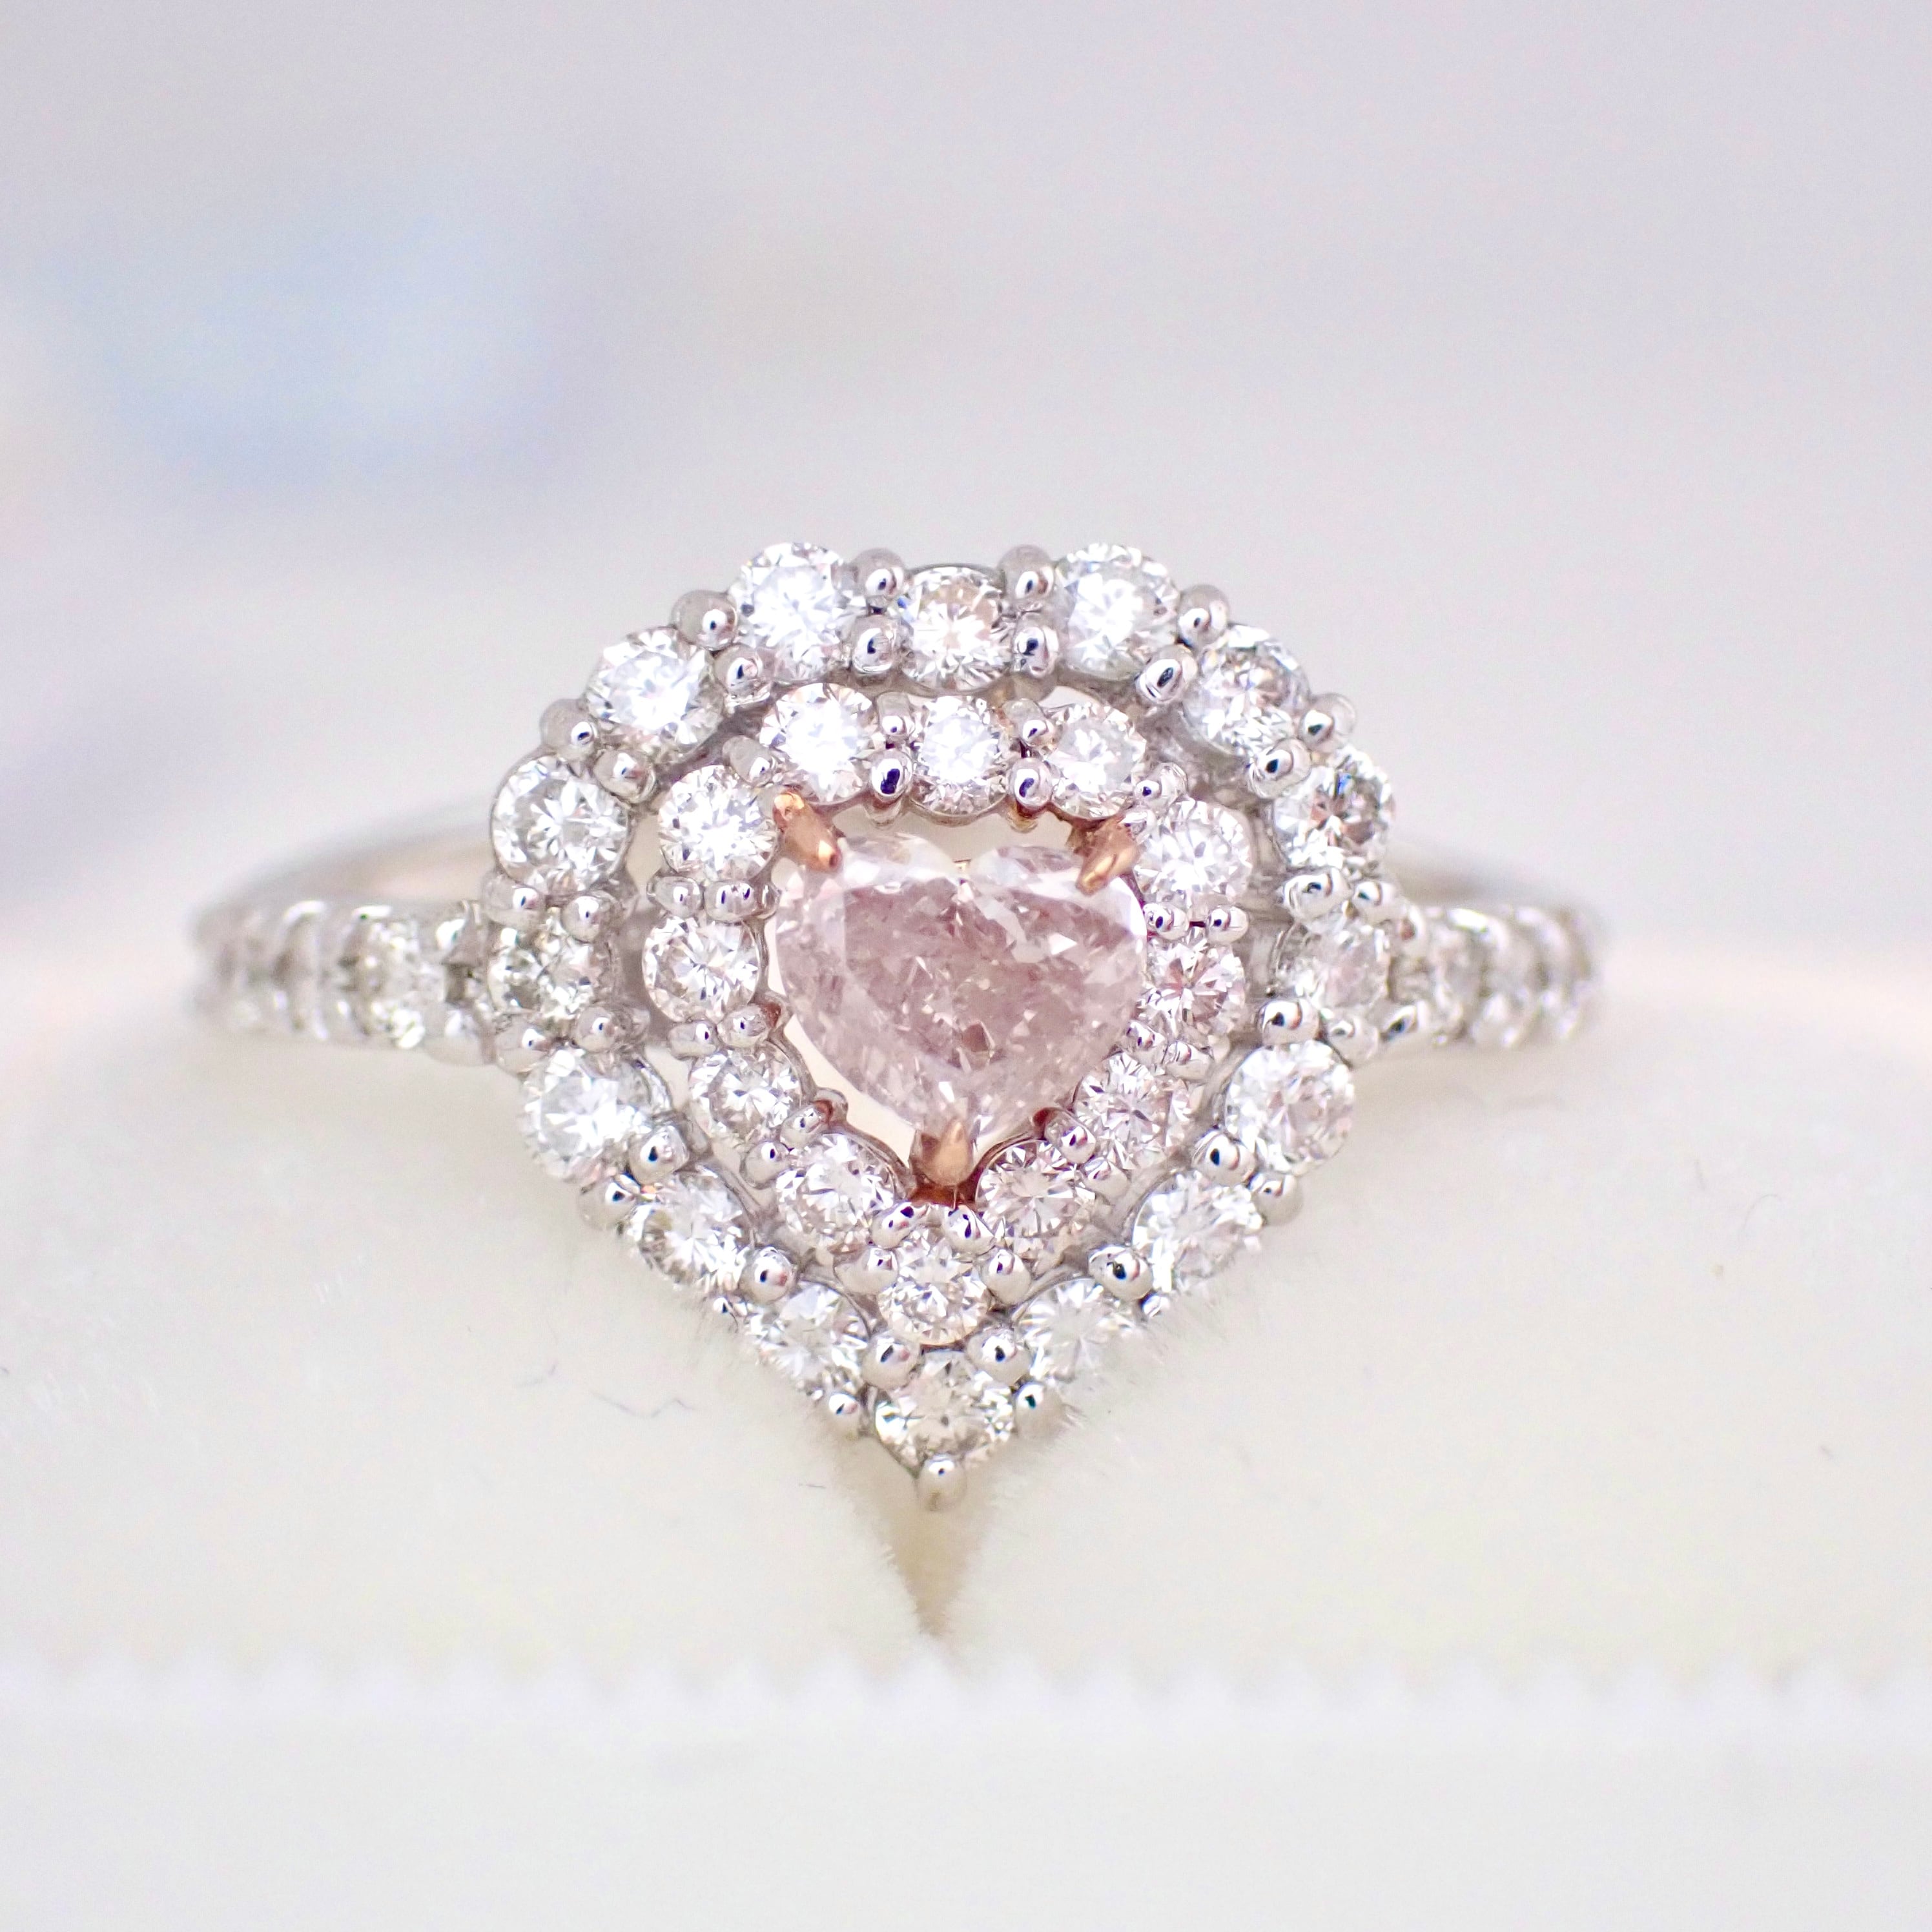 【Made in Japan】Pt950 K18 ゴールド プラチナ 0.30ct Fancy Light Brownish Pink Heart  Shape Halo Ring ピンクダイヤ リング 天然ダイヤ ダイヤモンドリング 0.69ct ハートシェイプダイヤモンド